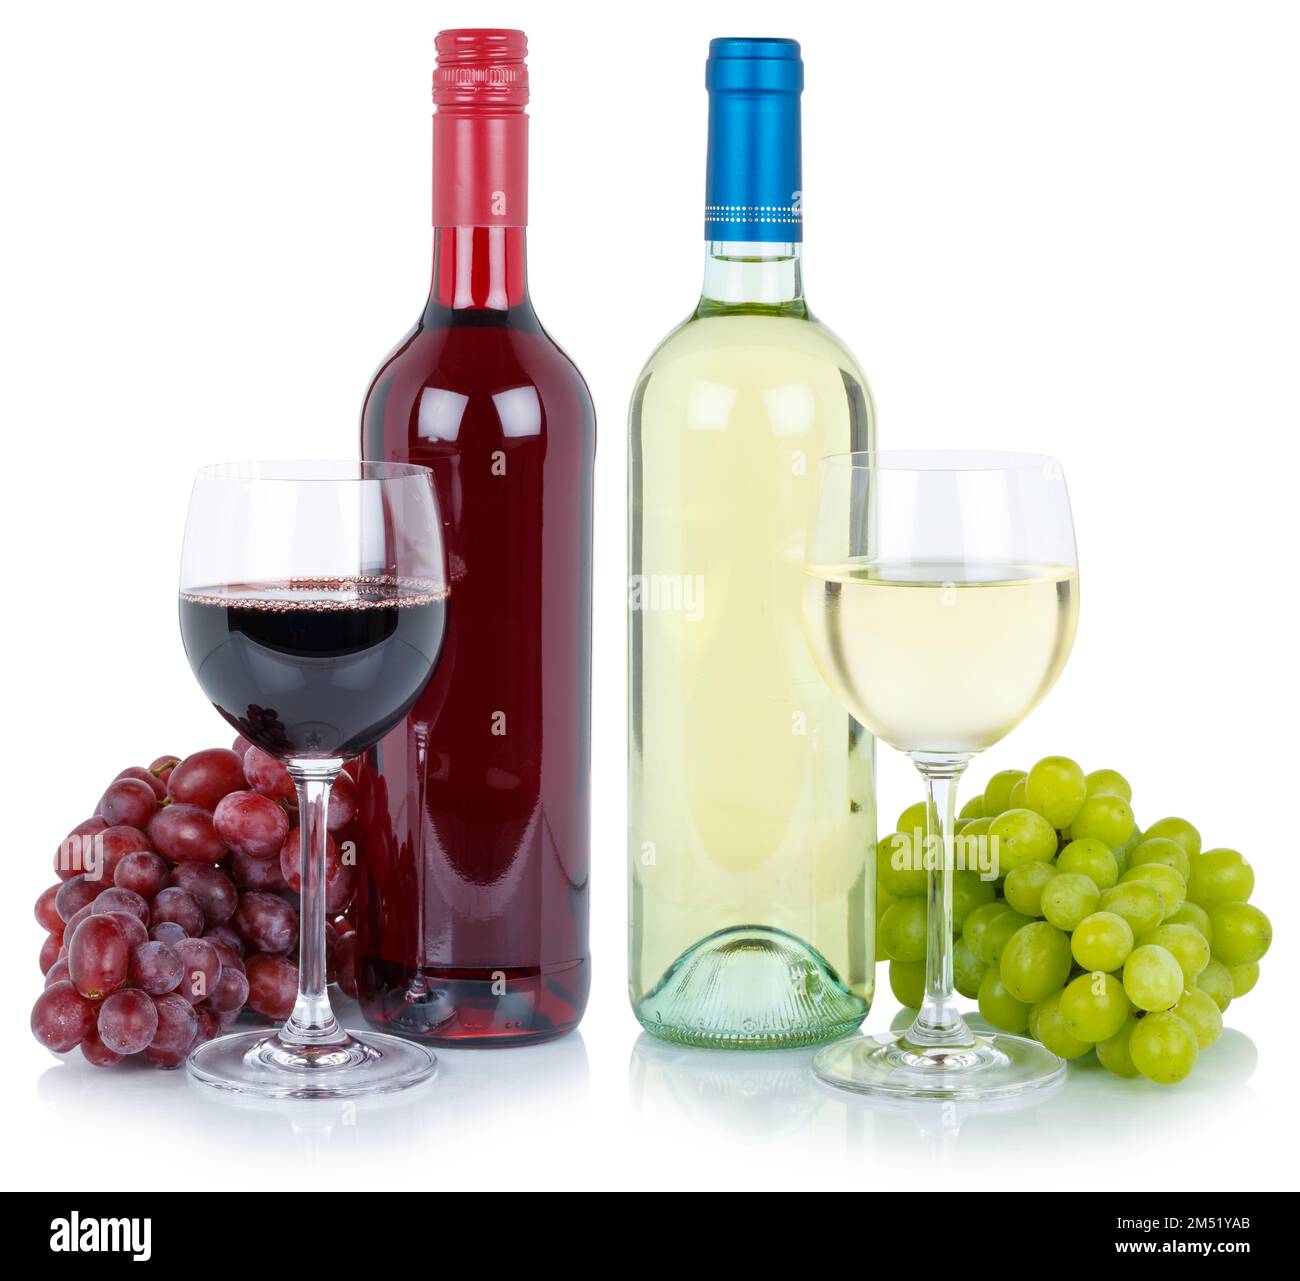 Vini degustazione vini raccolta di uve rosse bianche alcol isolato su fondo bianco Foto Stock